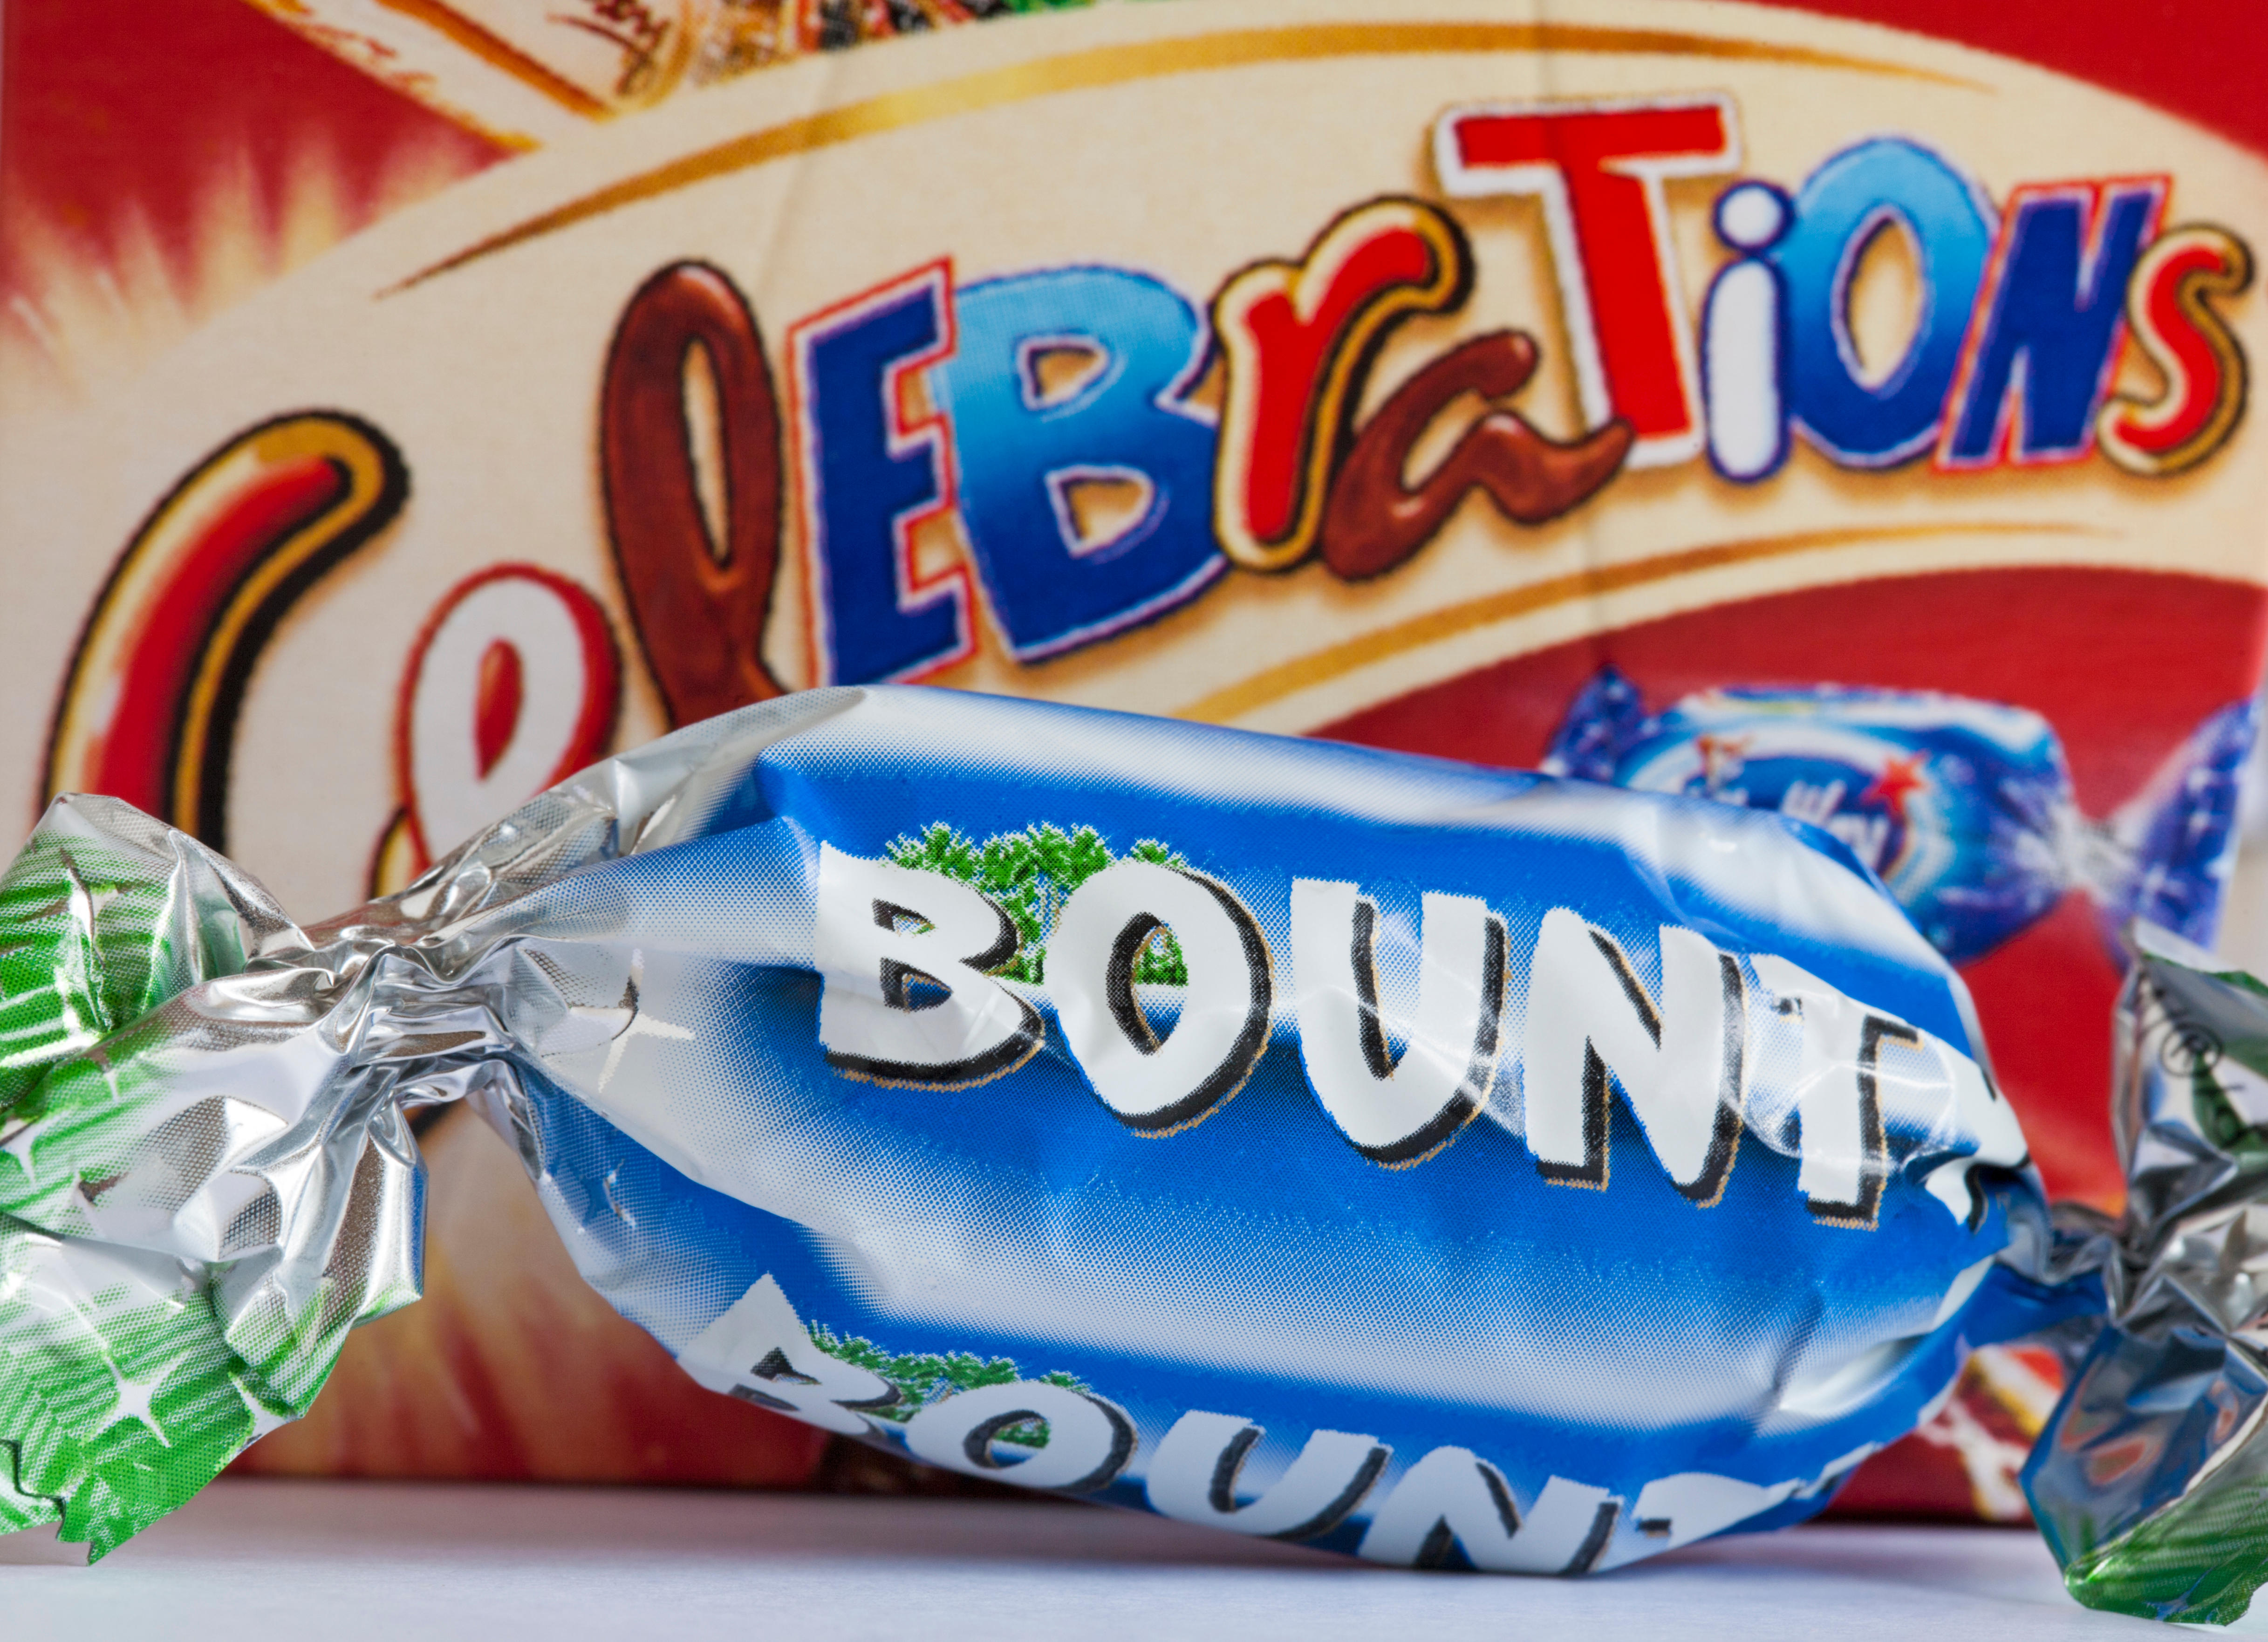 Die Menschen waren am Boden zerstört, als sie die Bounty-Schokolade in ihren Kalendern entdeckten